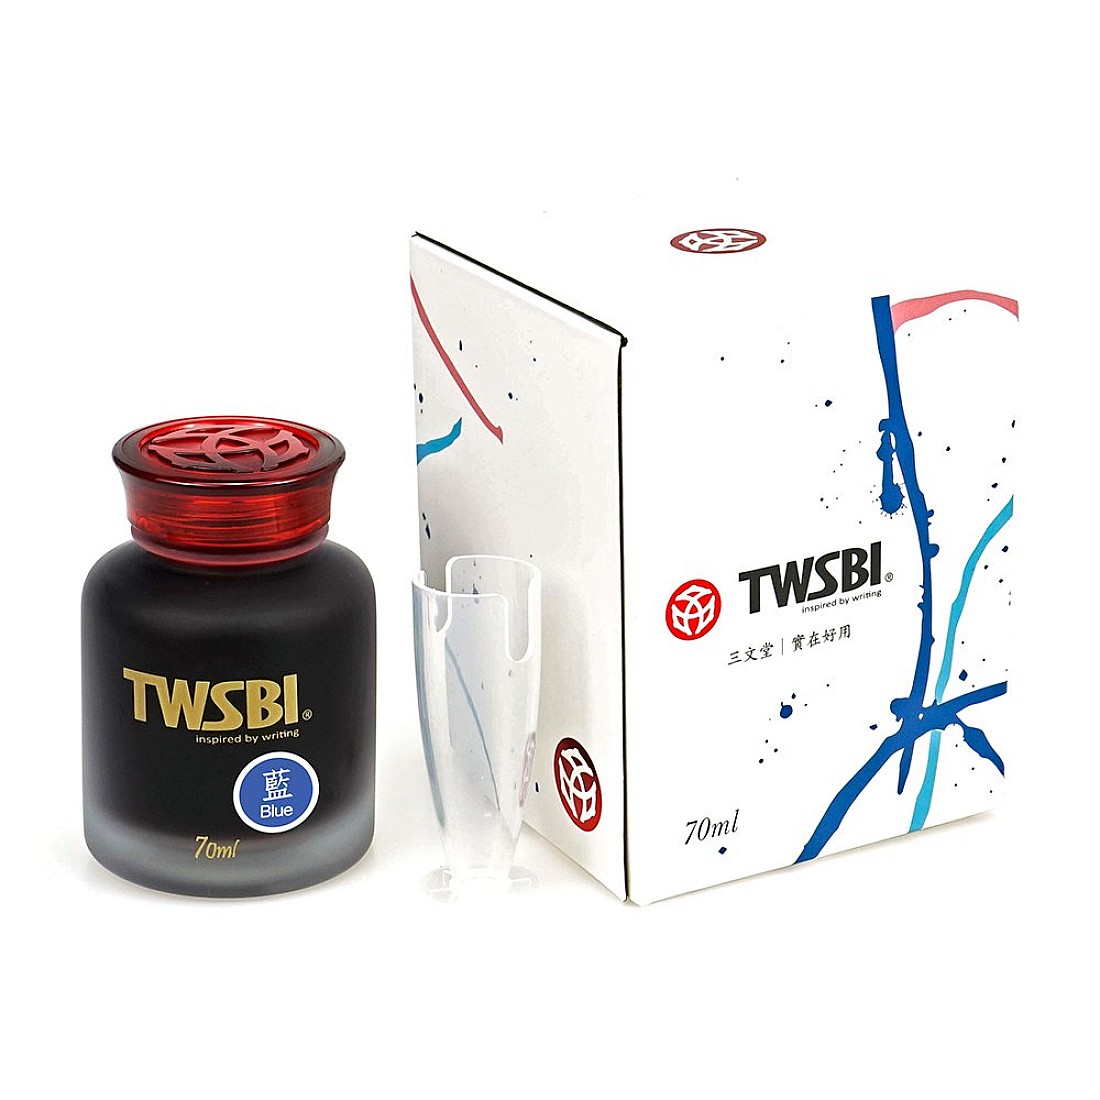 TWSBI 70ml Ink Bottle - Blue